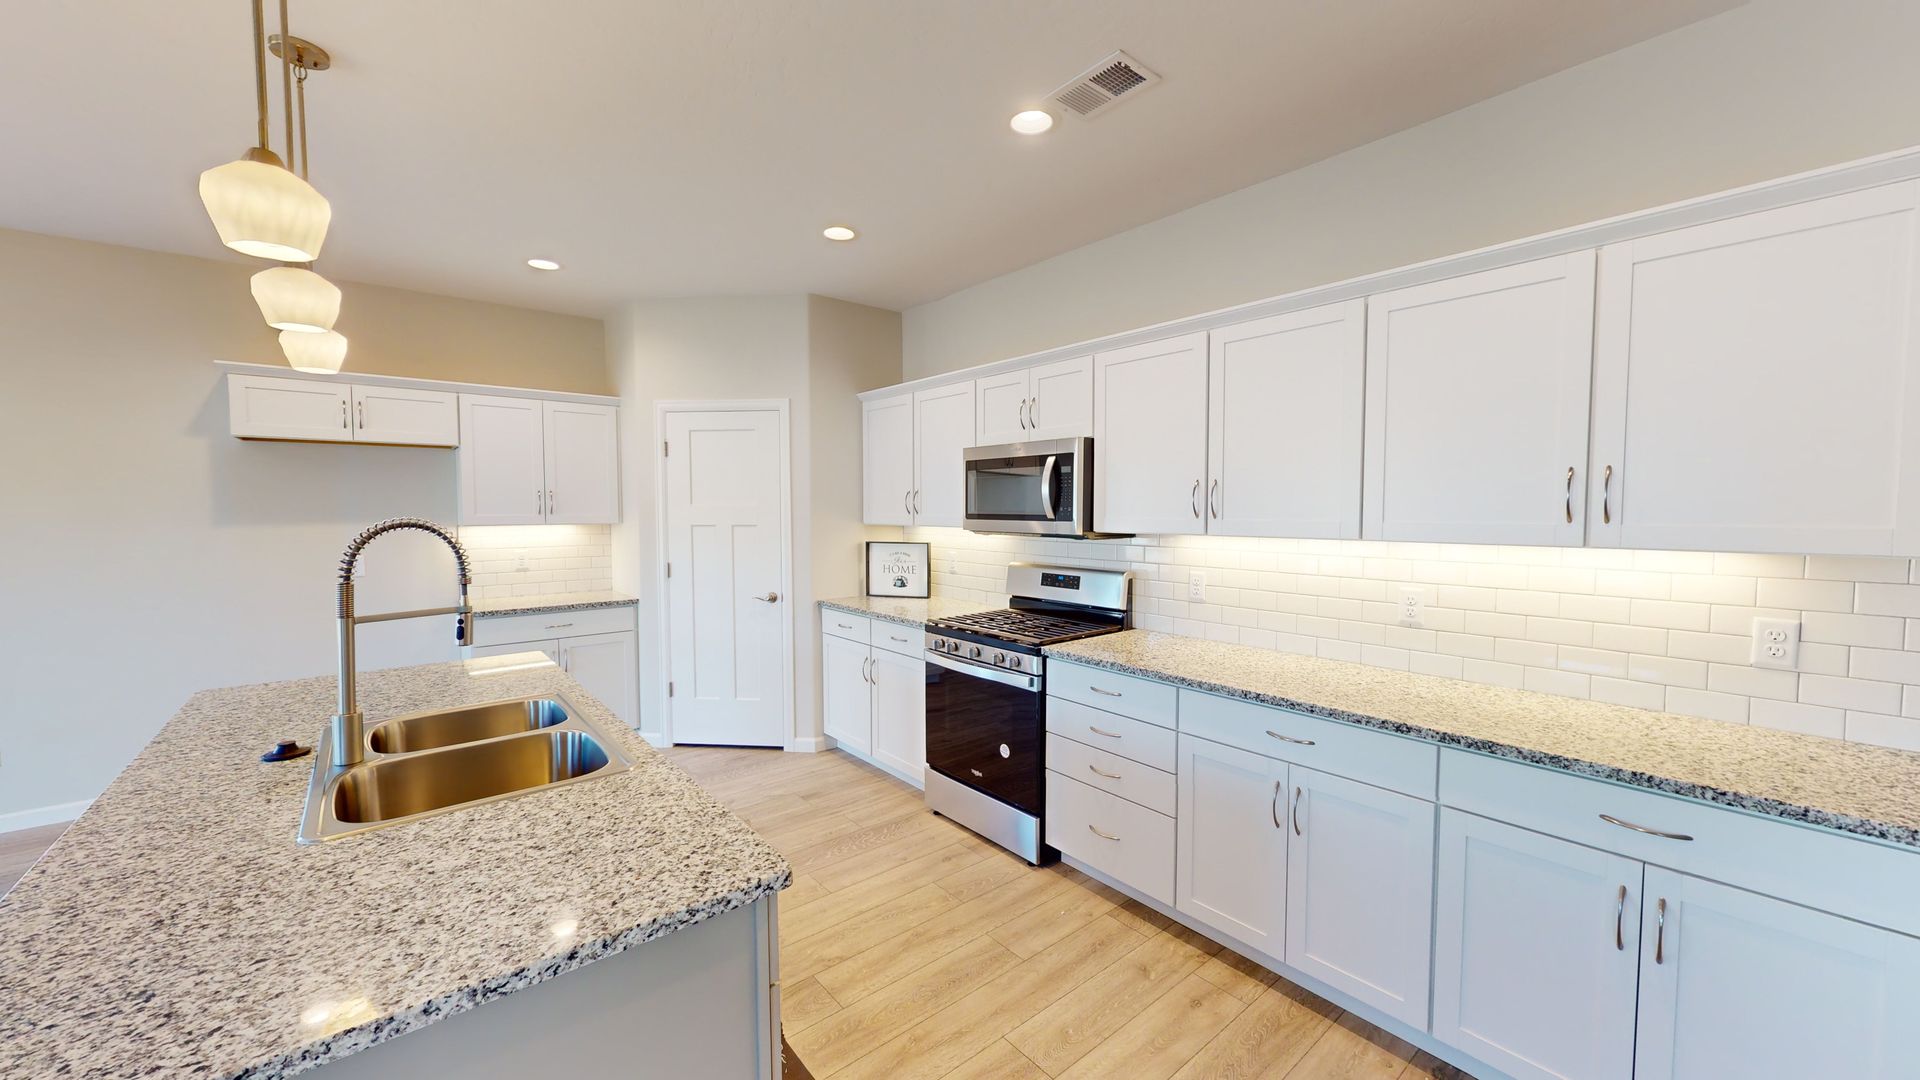 Bright white kitchen with granite counters